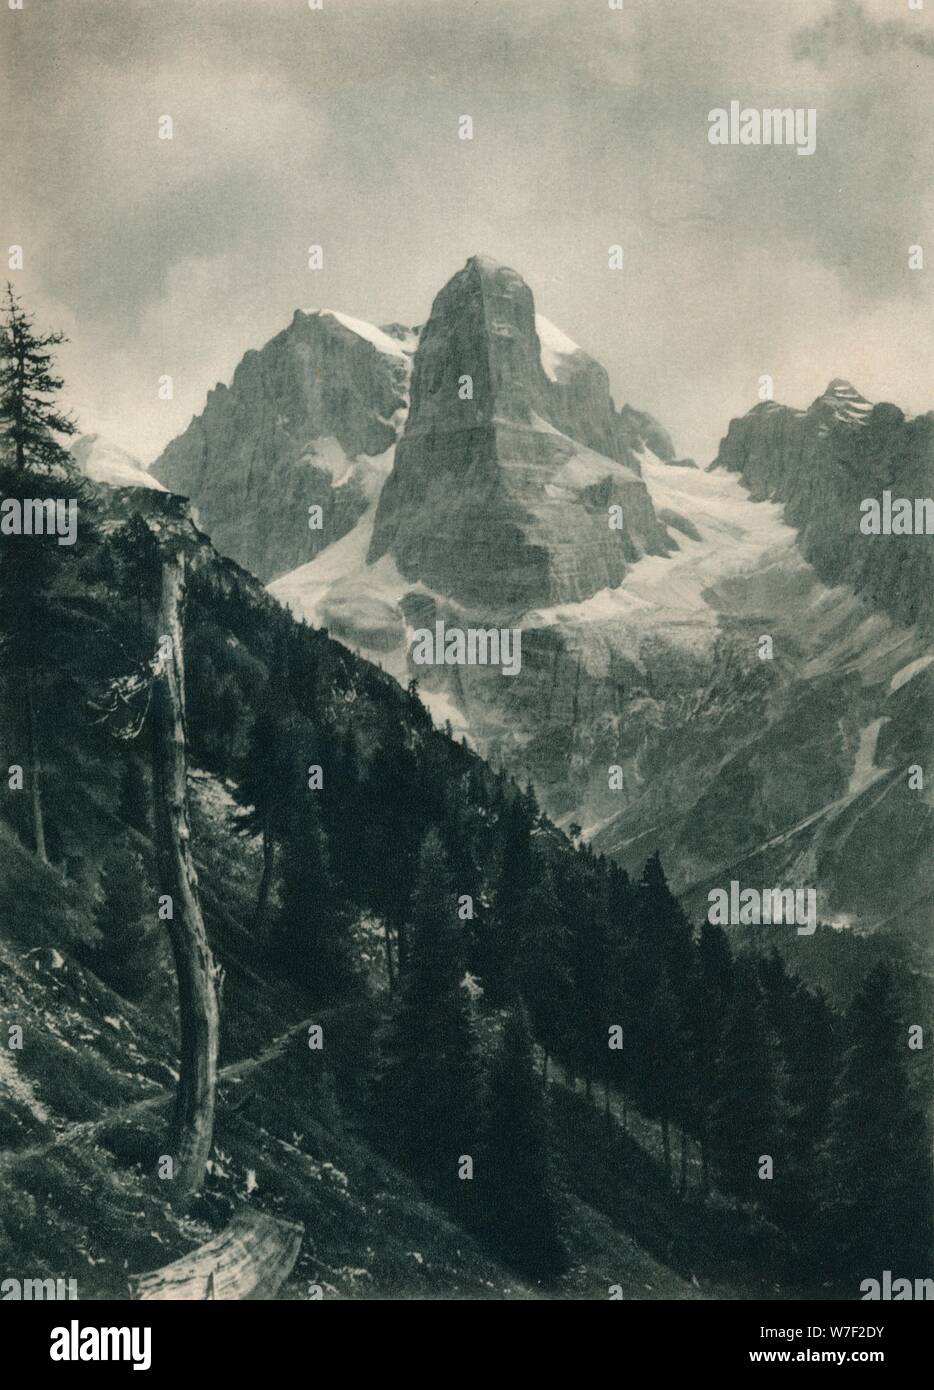 Vista del Gruppo del Brenta, Madonna di Campiglio, Dolomiti, Italia, 1927. Artista: Eugen Poppel. Foto Stock